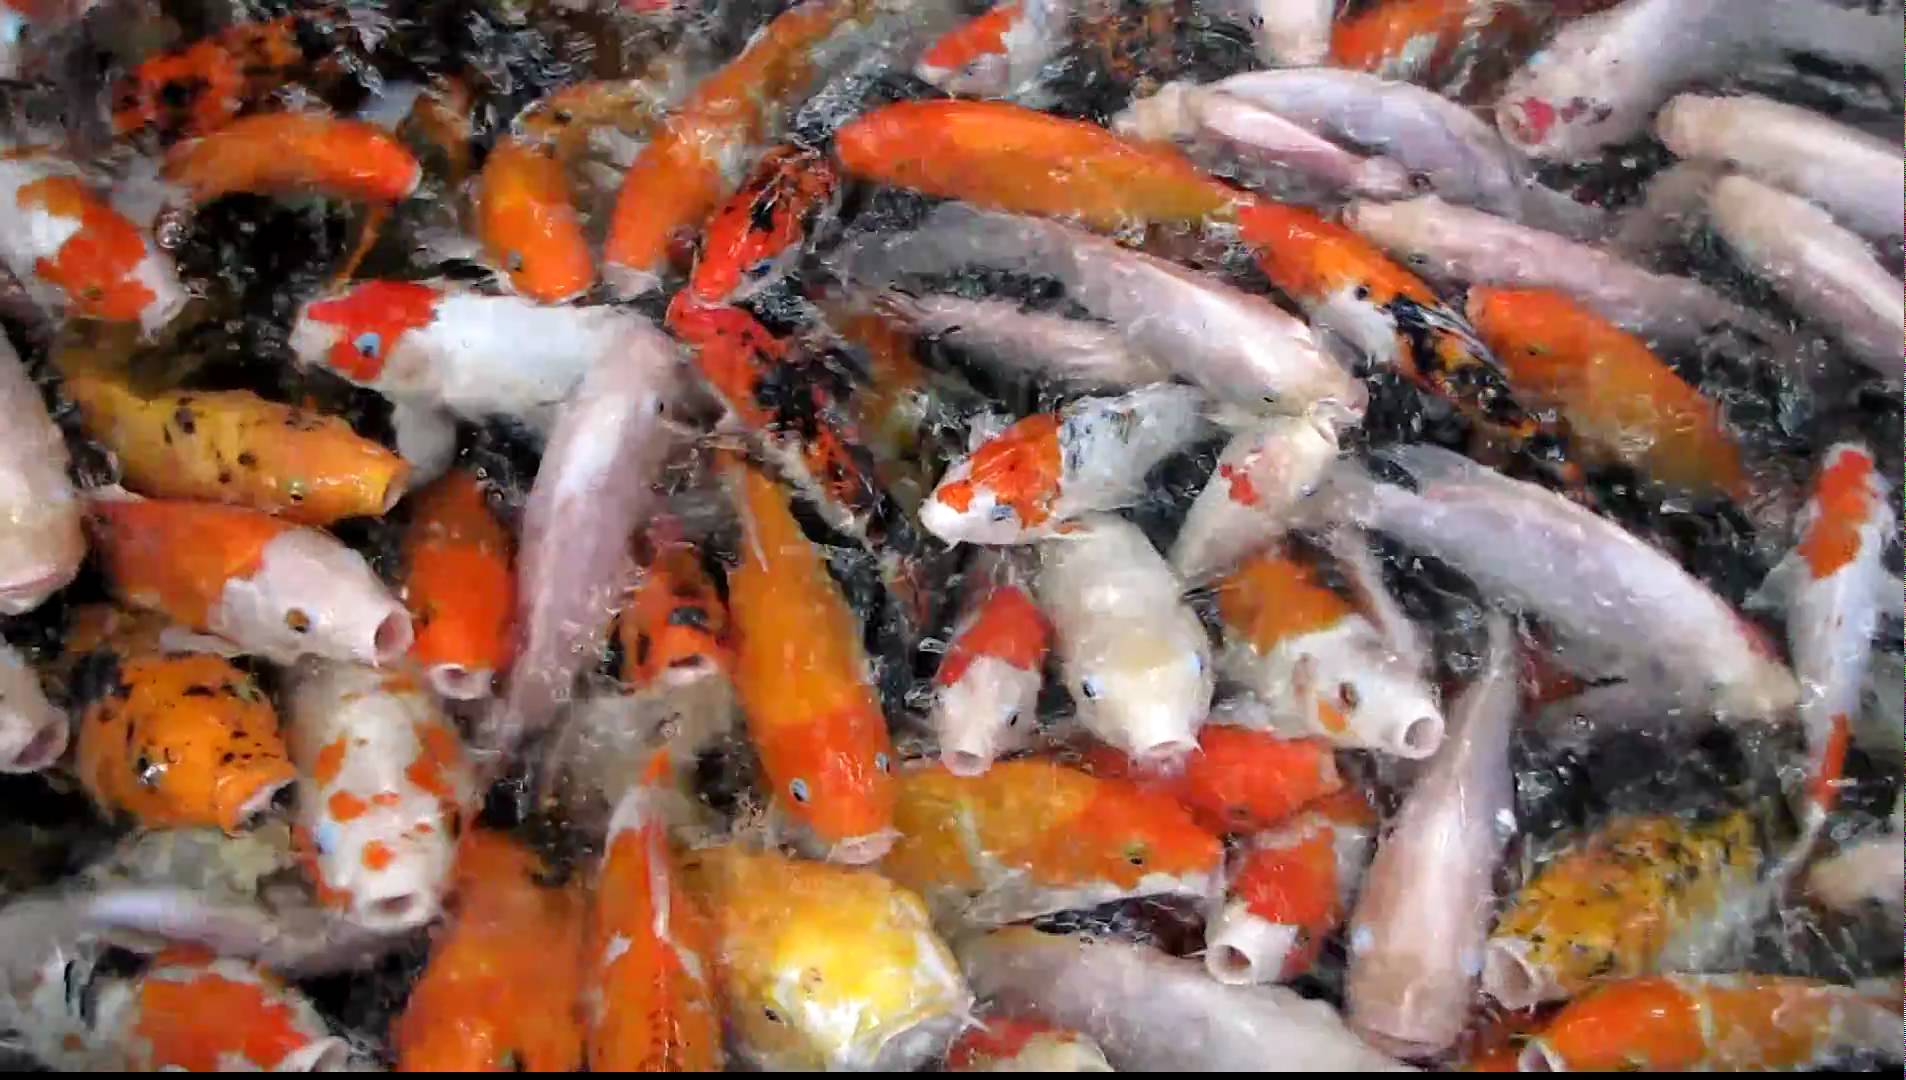 CRAZY Koi Carp Goldfish Feeding Frenzy - Kuala Lumpur - YouTube